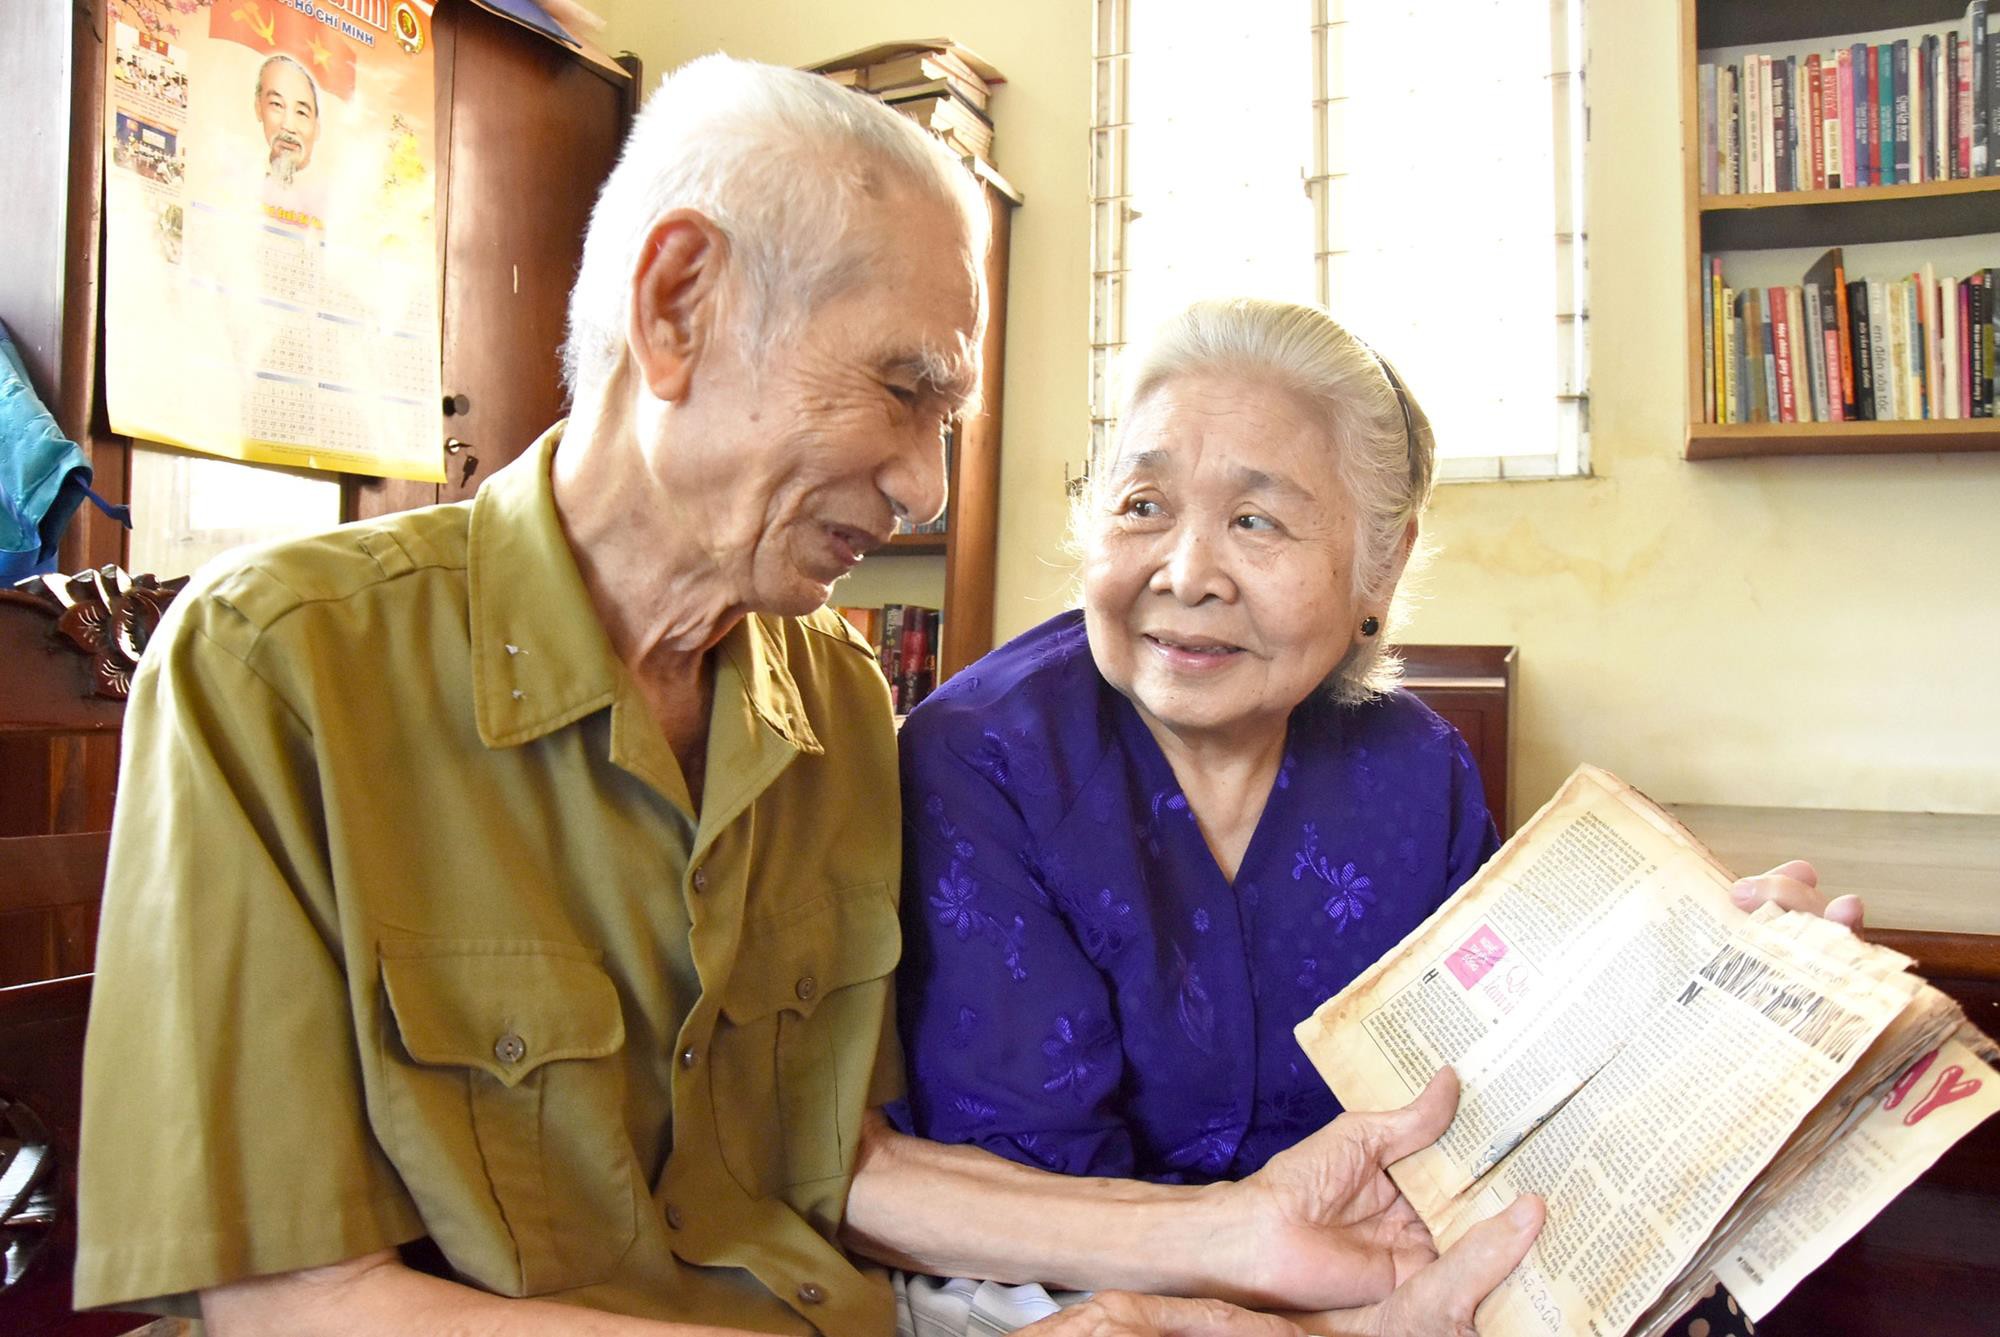 Ông Trần Nhật Minh và vợ xem lại những bài báo viết về Bác Hồ được ông bà lưu giữ cẩn thận - Ảnh: SGGP